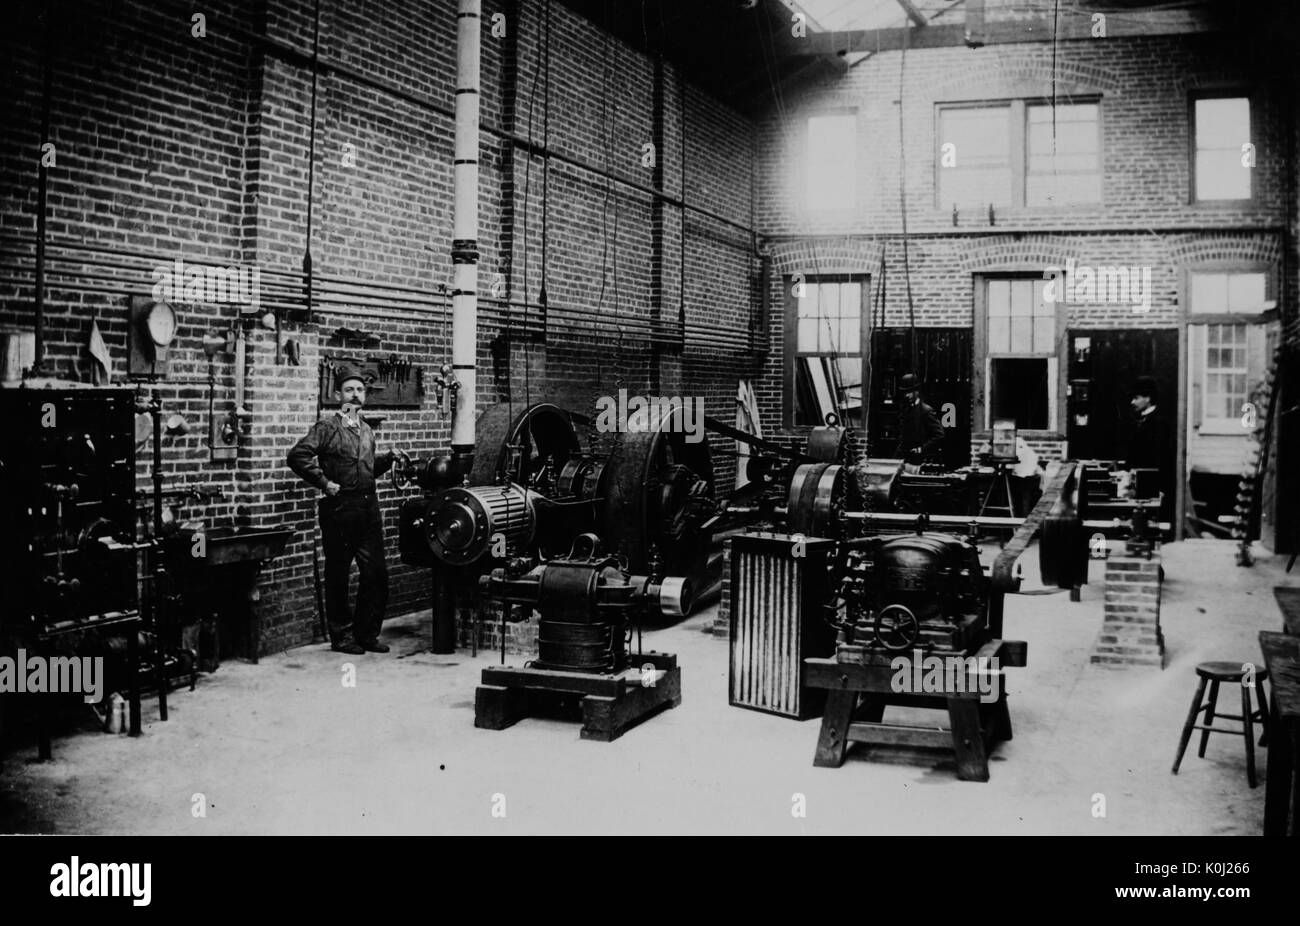 L'intérieur d'une centrale électrique à l'université Johns Hopkins, représentant un homme qui tend à une pièce d'équipement et diverses autres machines. 1900. Banque D'Images